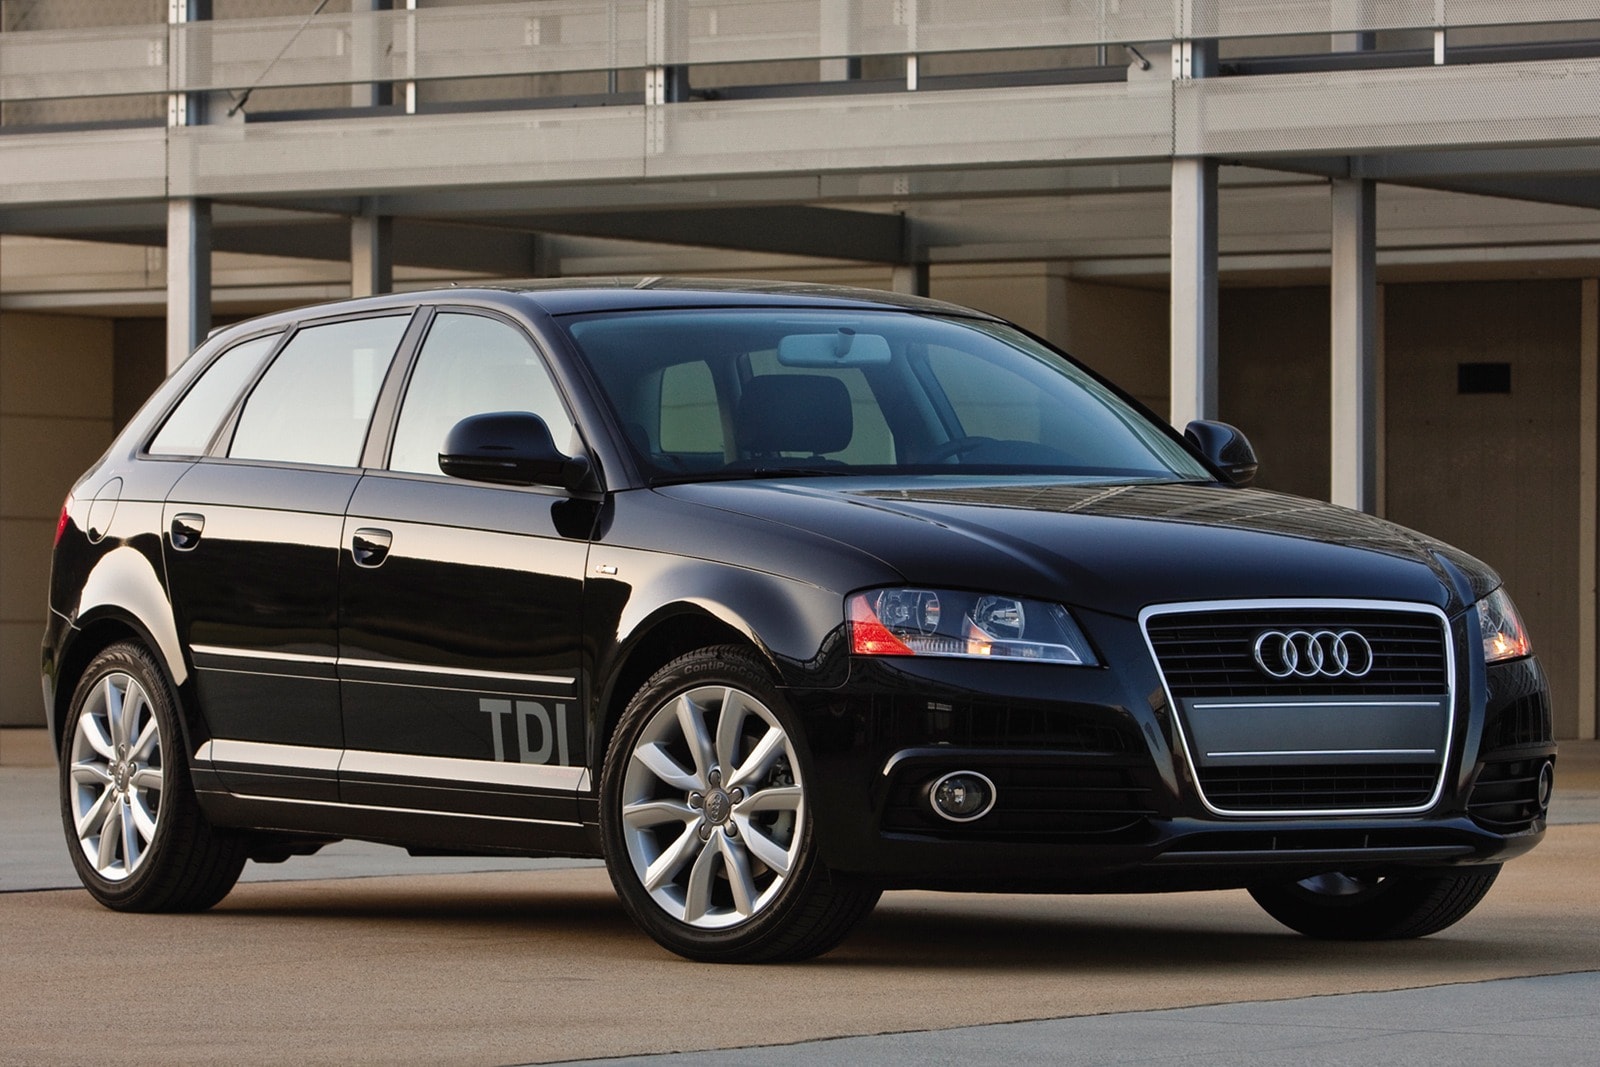 2010 Audi A3 Review & Ratings | Edmunds